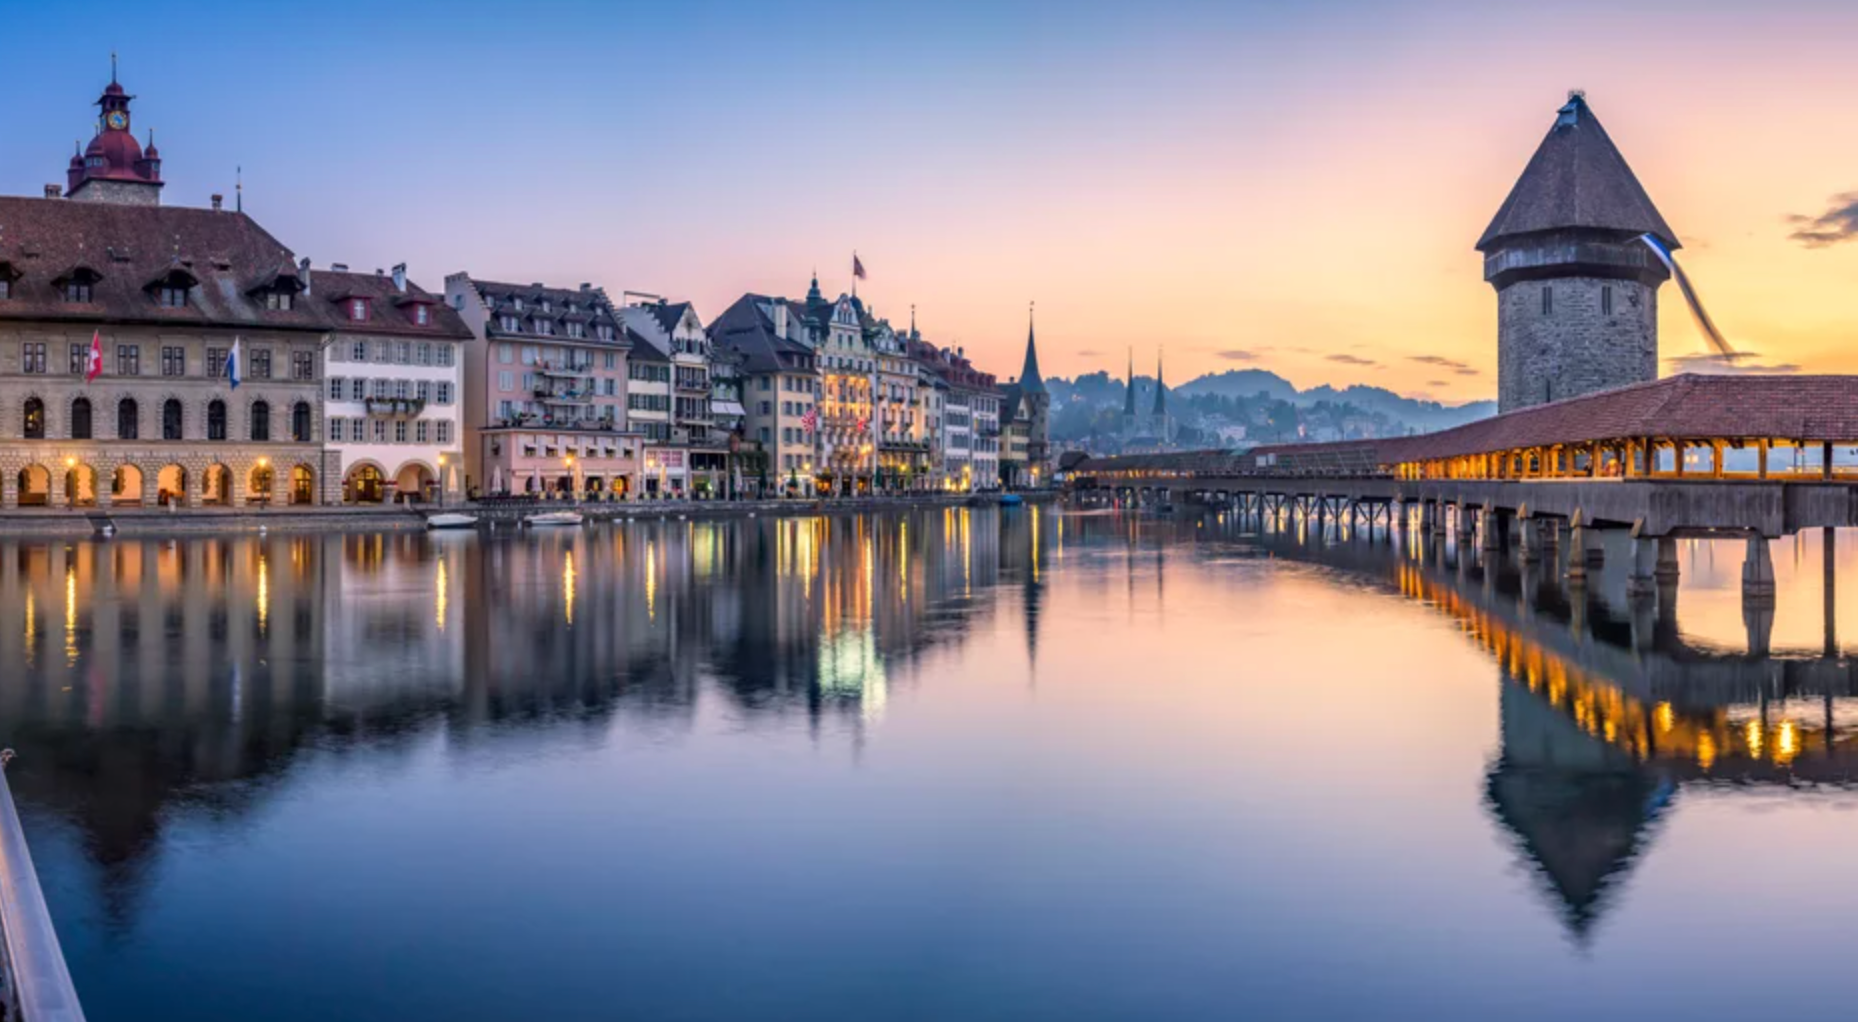 உலகின் மிக அழகான இடங்களில் ஒன்றாக Luzern தெரிவு